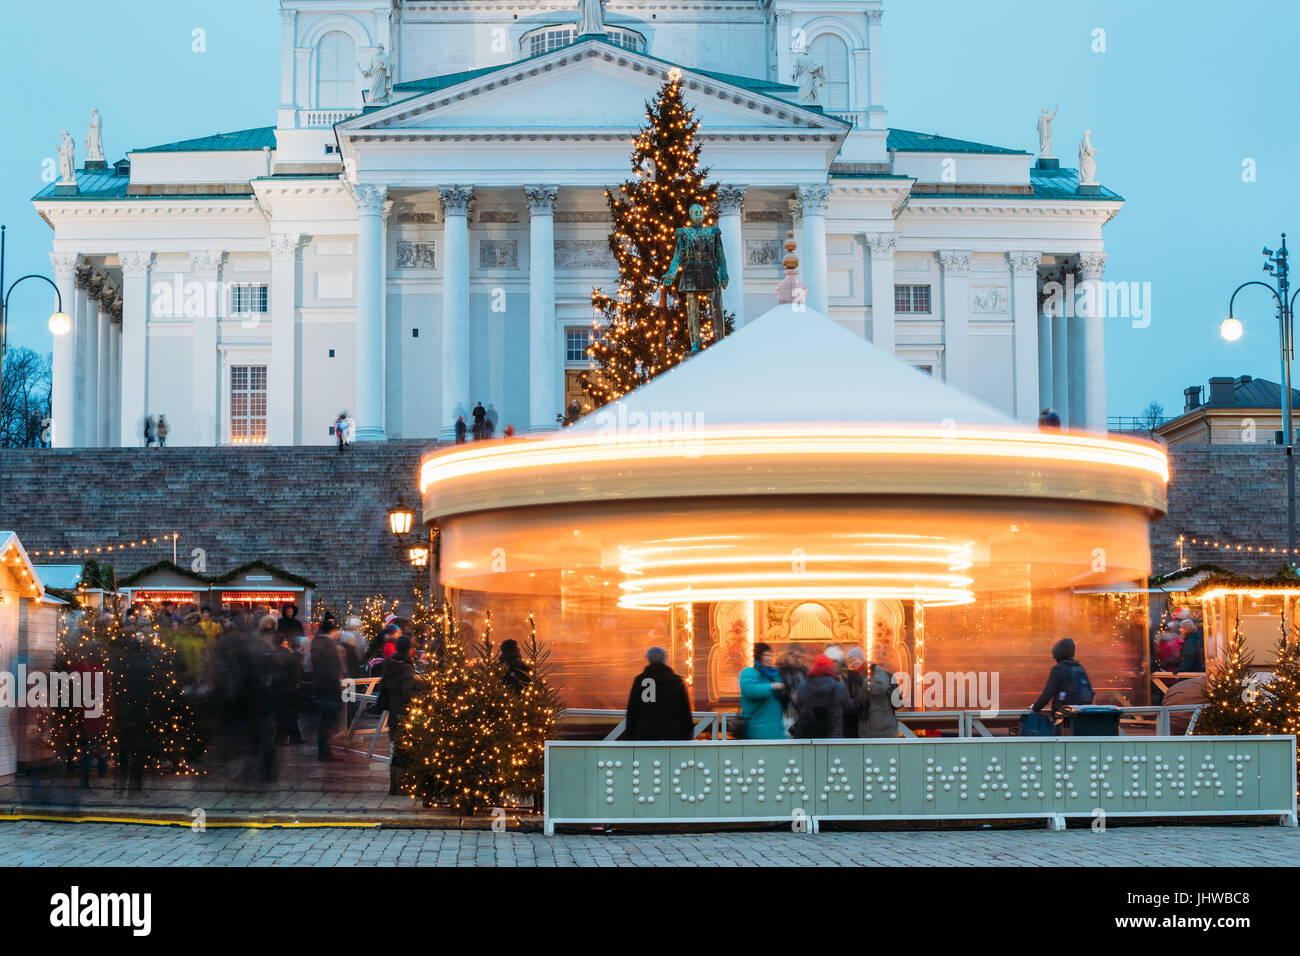 Helsinki, Finlandia - 11 de diciembre de 2016: Mercado de Navidad en la Plaza del Senado Con Holiday carrusel y famoso monumento es la Catedral Luterana y el Monumento de Ru Foto de stock